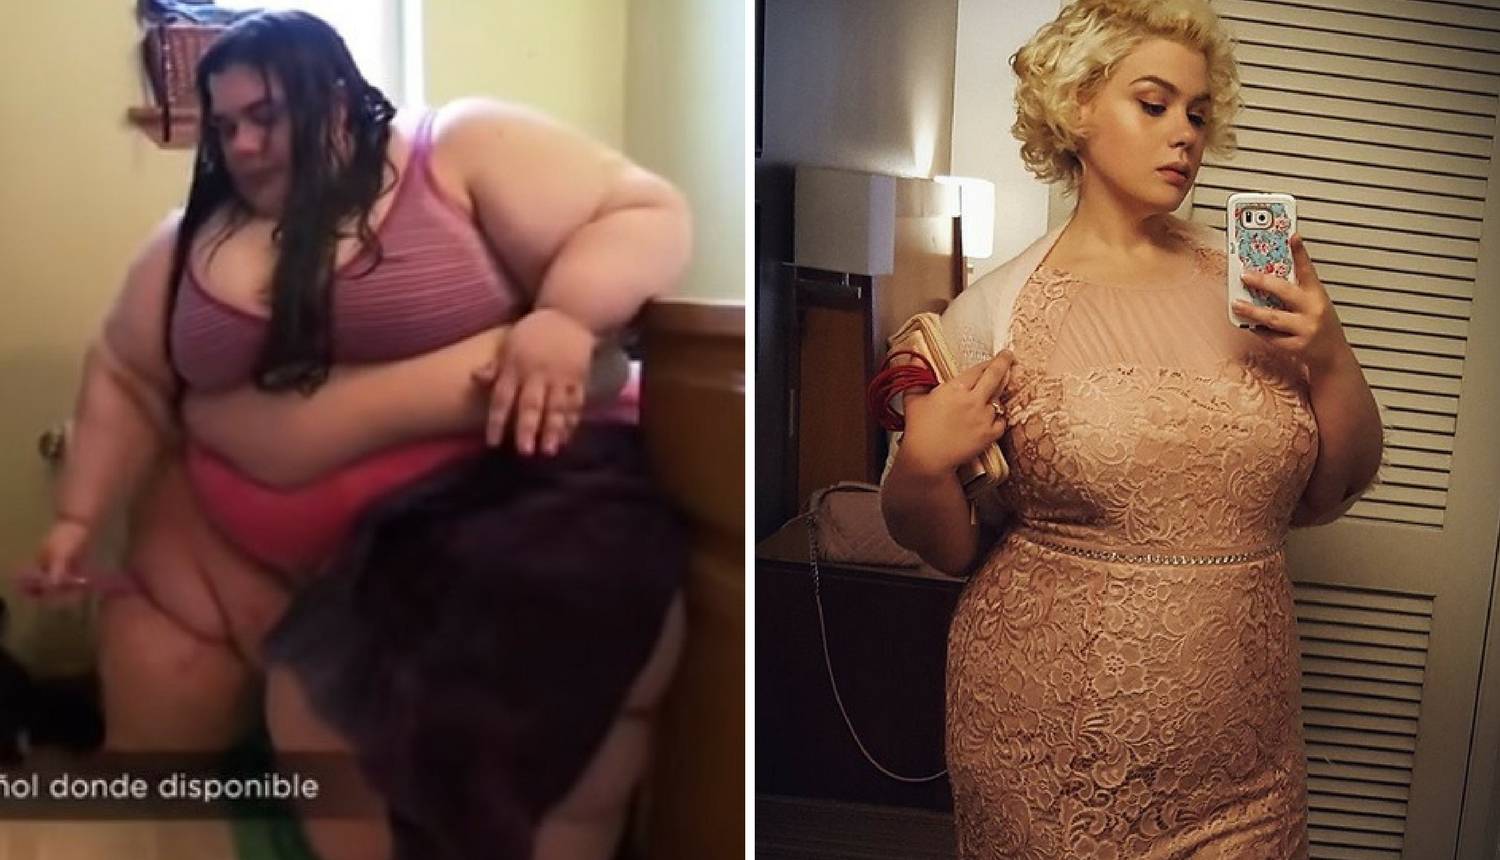 Imala je 300 kg, život joj je bio u opasnosti: Sad je druga žena